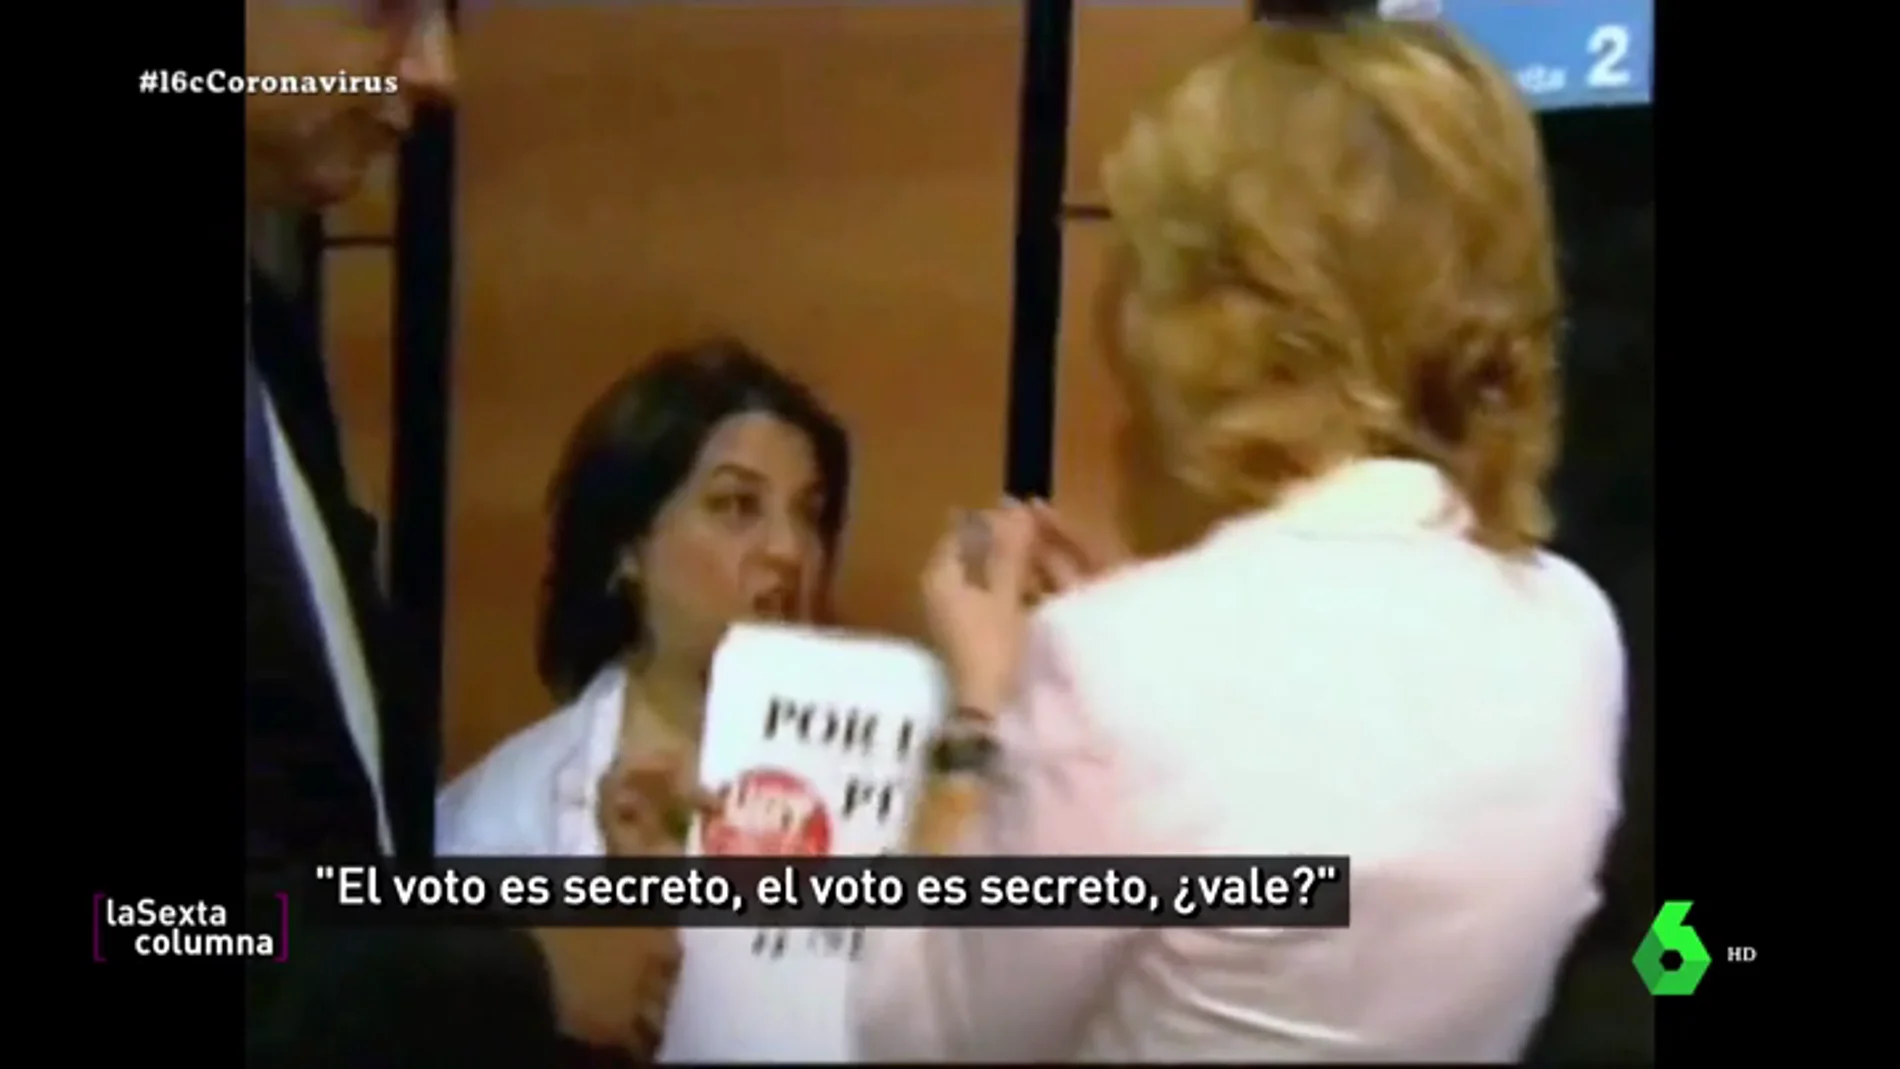 El día que Esperanza Aguirre retó a los empleados de la Sanidad pública: "¡El voto es secreto!"